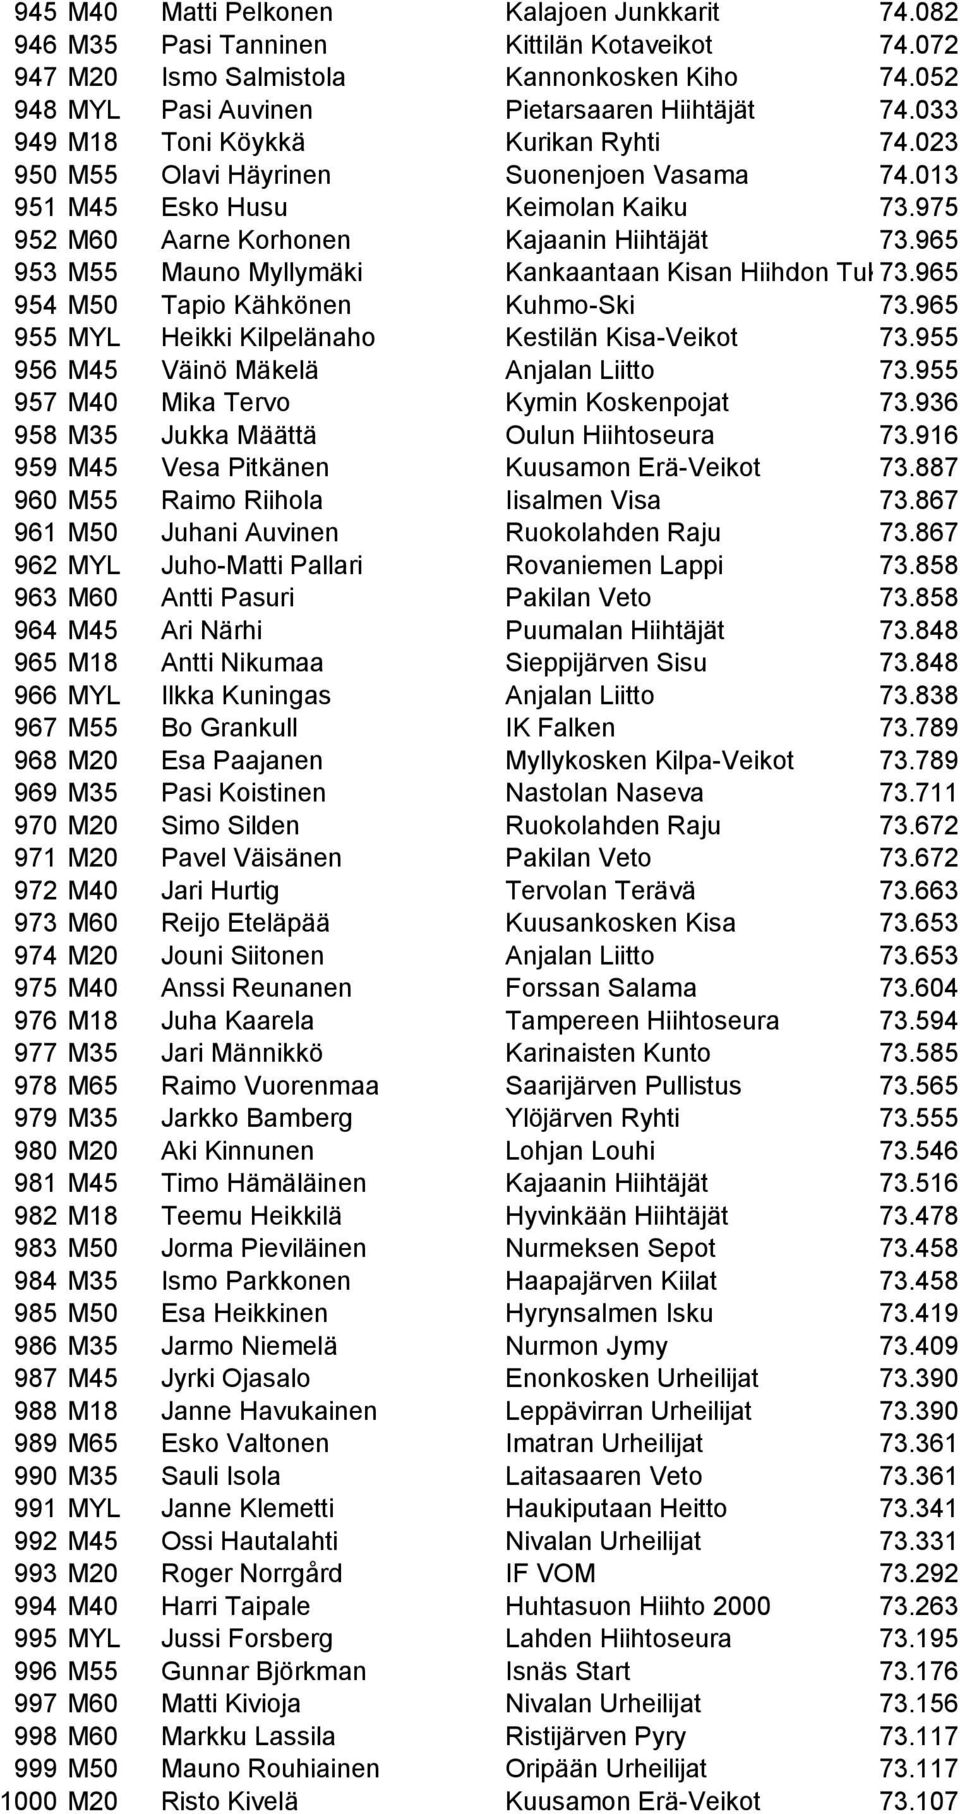 965 953 M55 Mauno Myllymäki Kankaantaan Kisan Hiihdon Tuki73.965 954 M50 Tapio Kähkönen Kuhmo-Ski 73.965 955 MYL Heikki Kilpelänaho Kestilän Kisa-Veikot 73.955 956 M45 Väinö Mäkelä Anjalan Liitto 73.